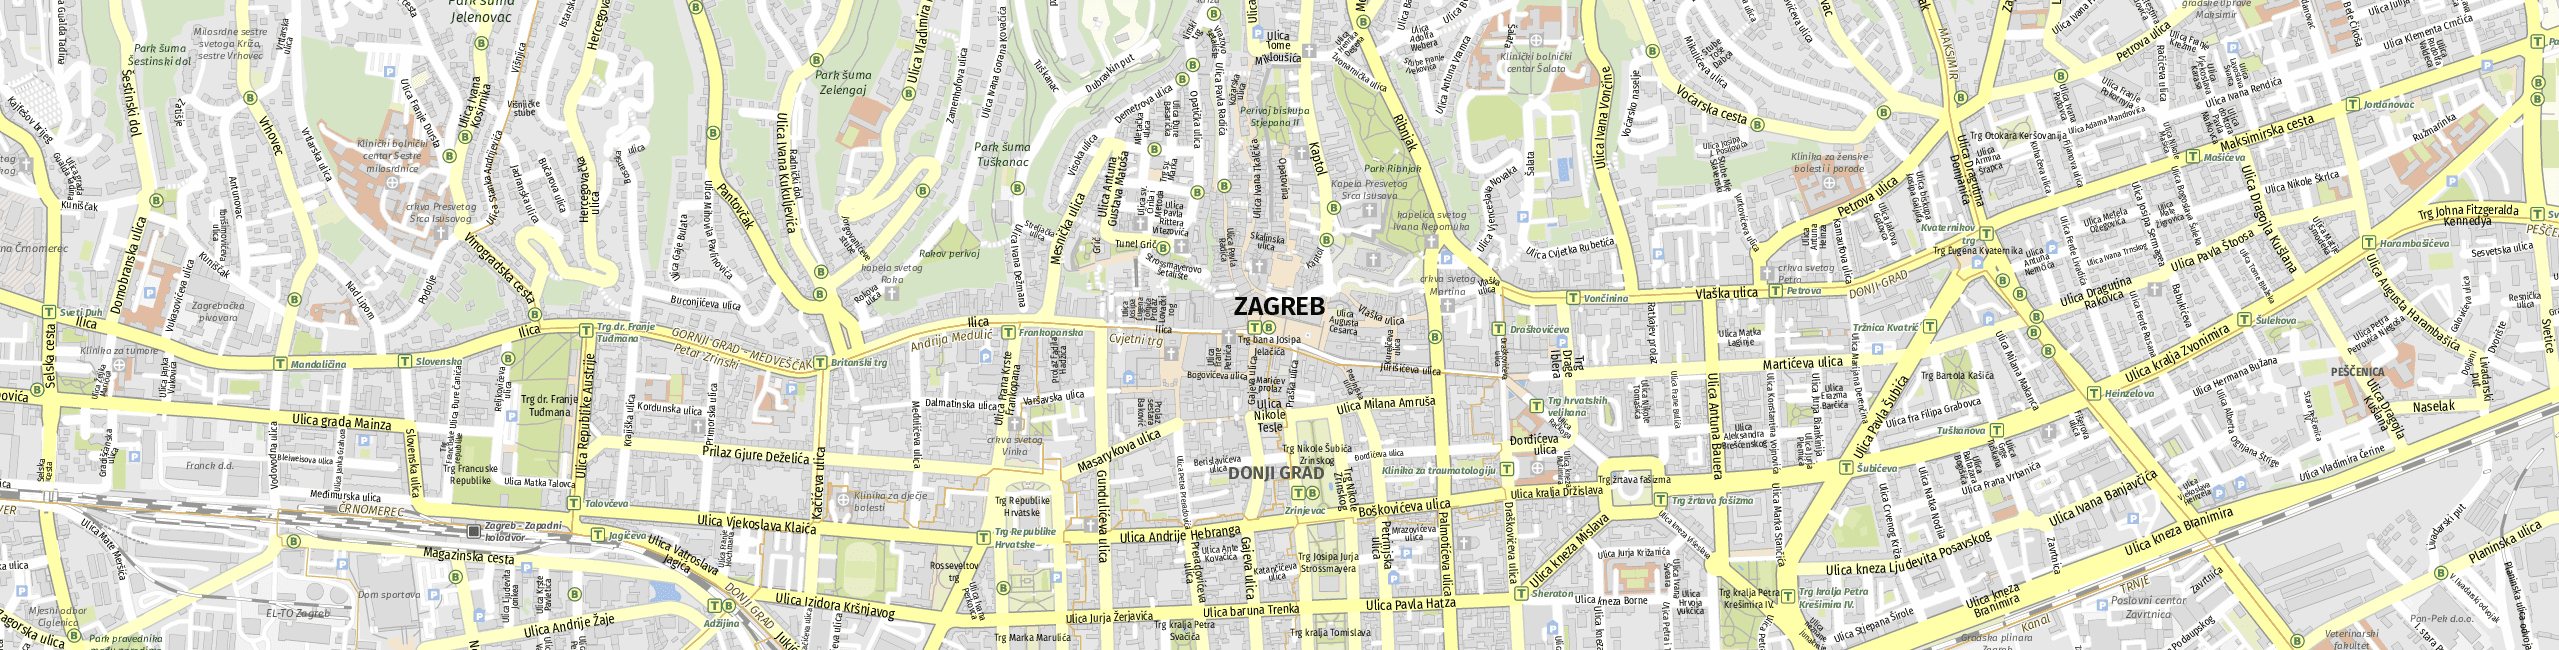 Stadtplan Zagreb zum Downloaden.